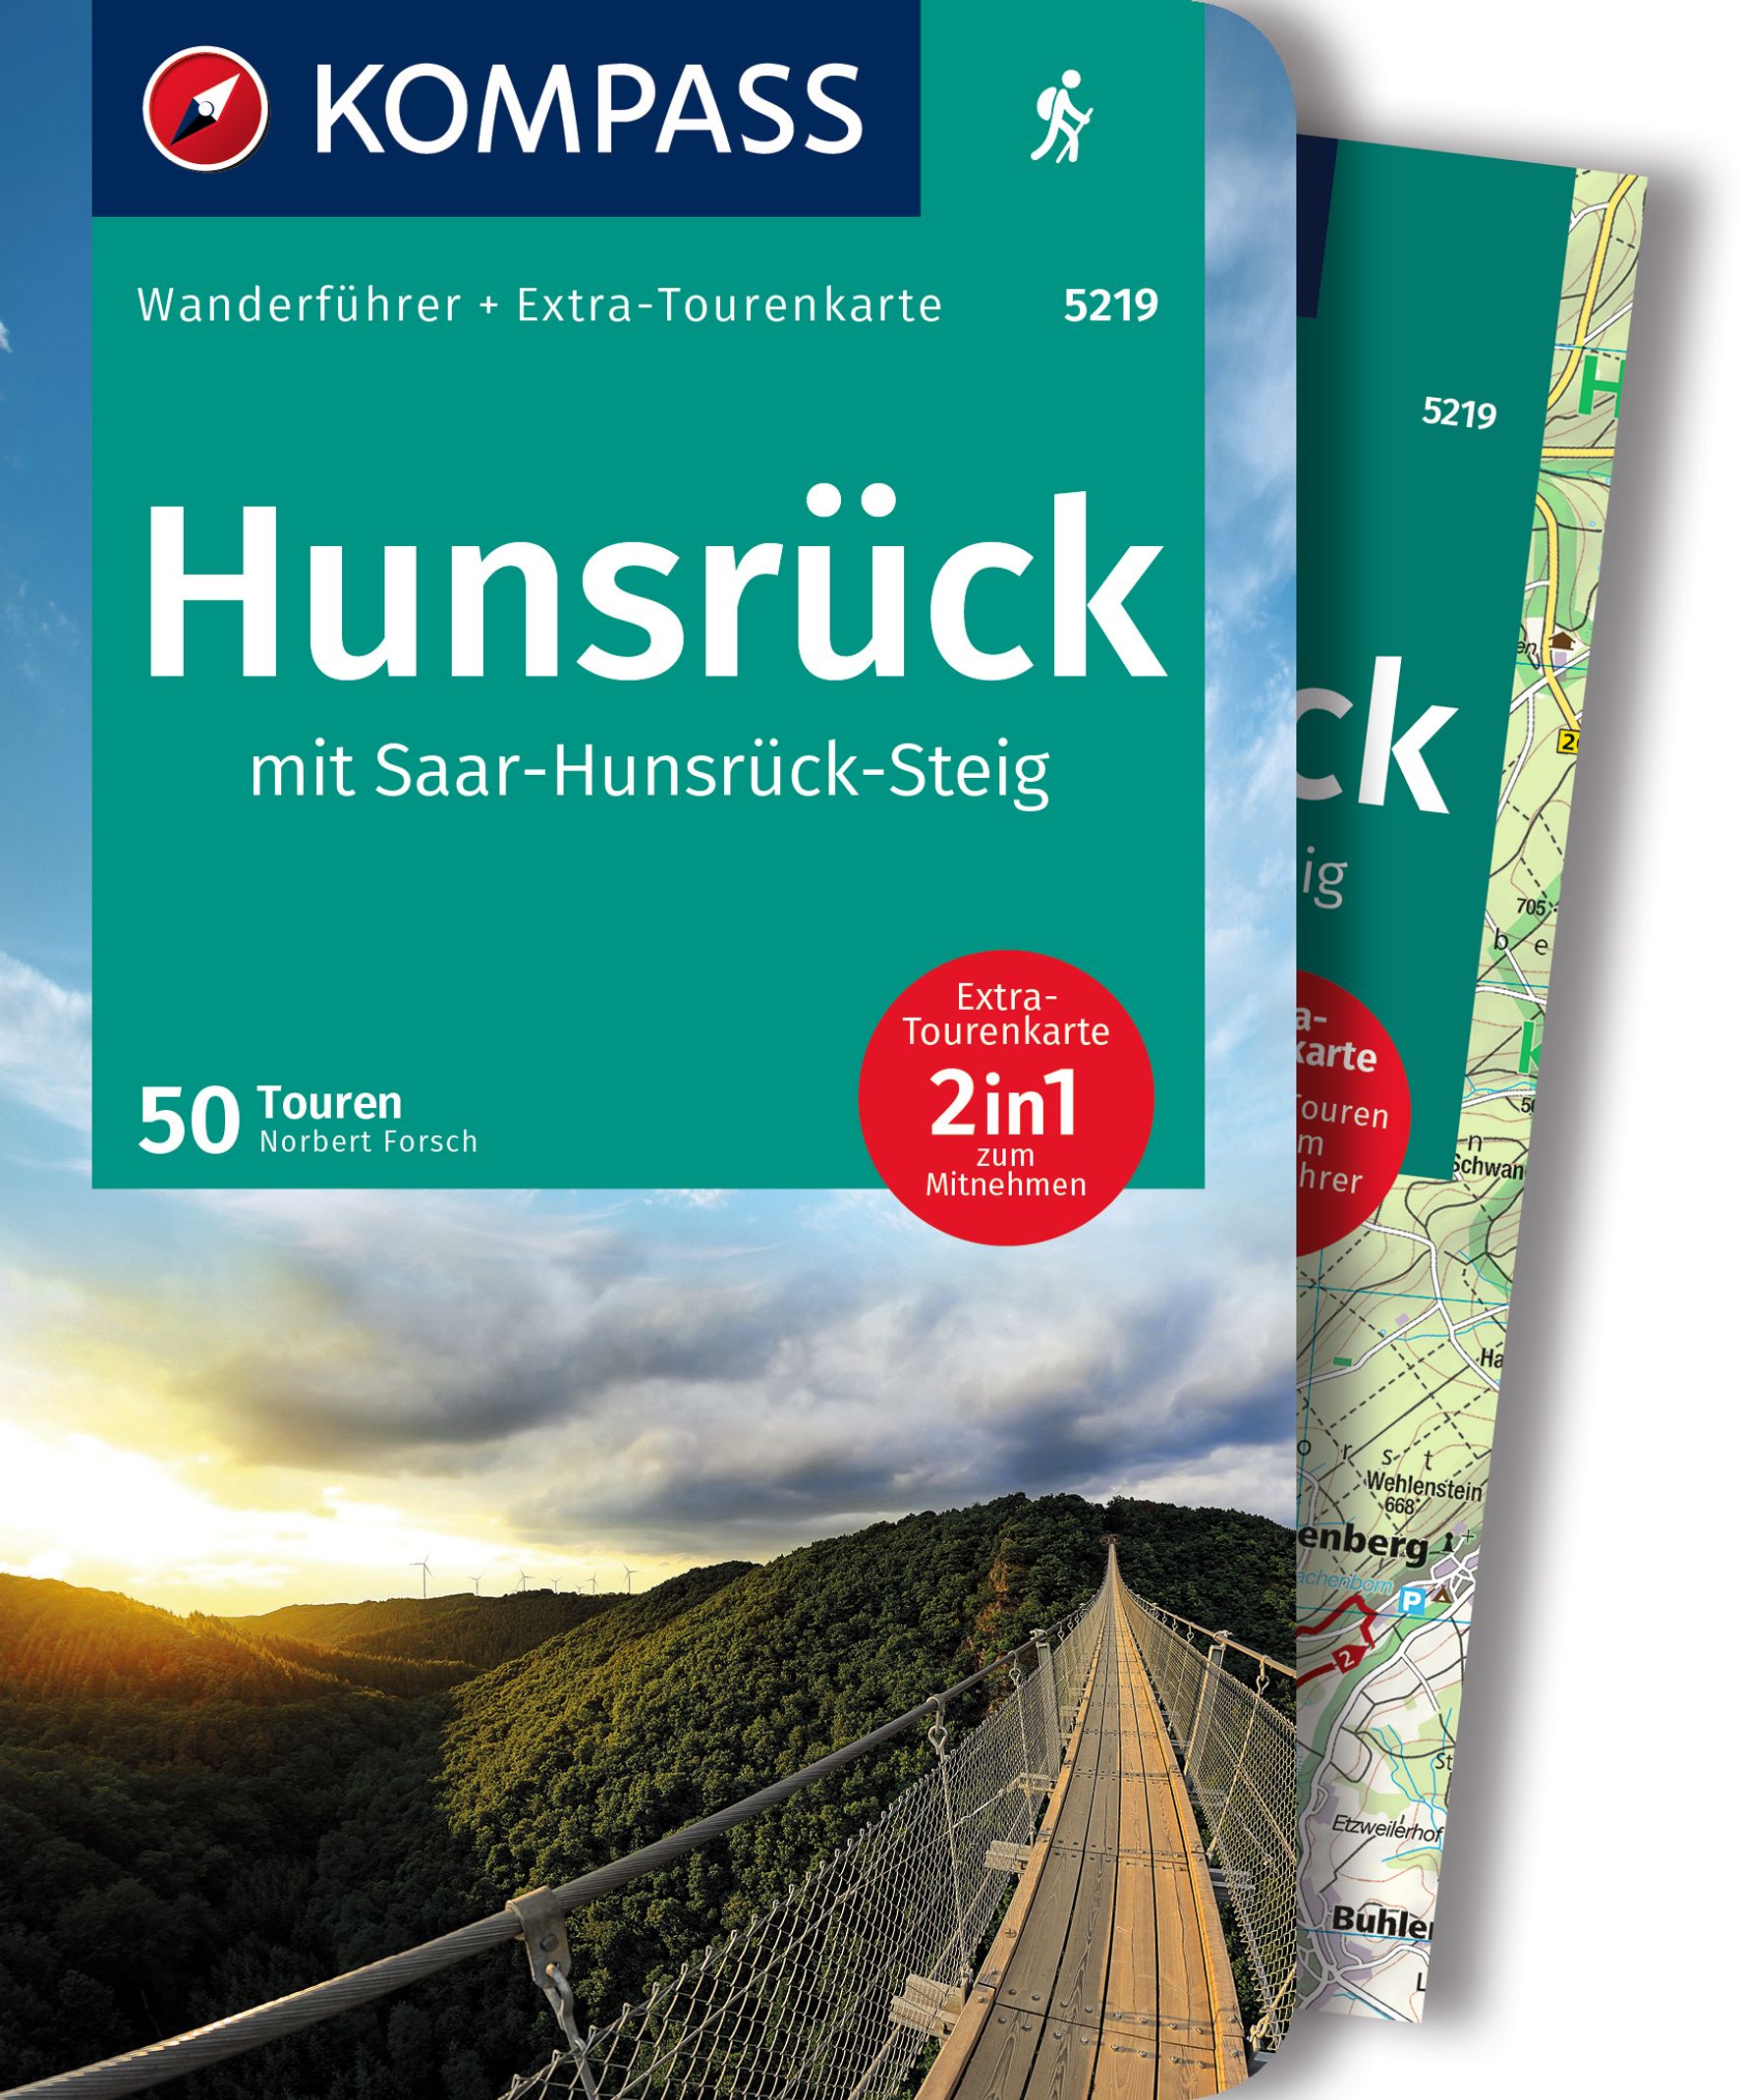 MAIRDUMONT Hunsrück mit Saar-Hunsrück-Steig, 50 Touren